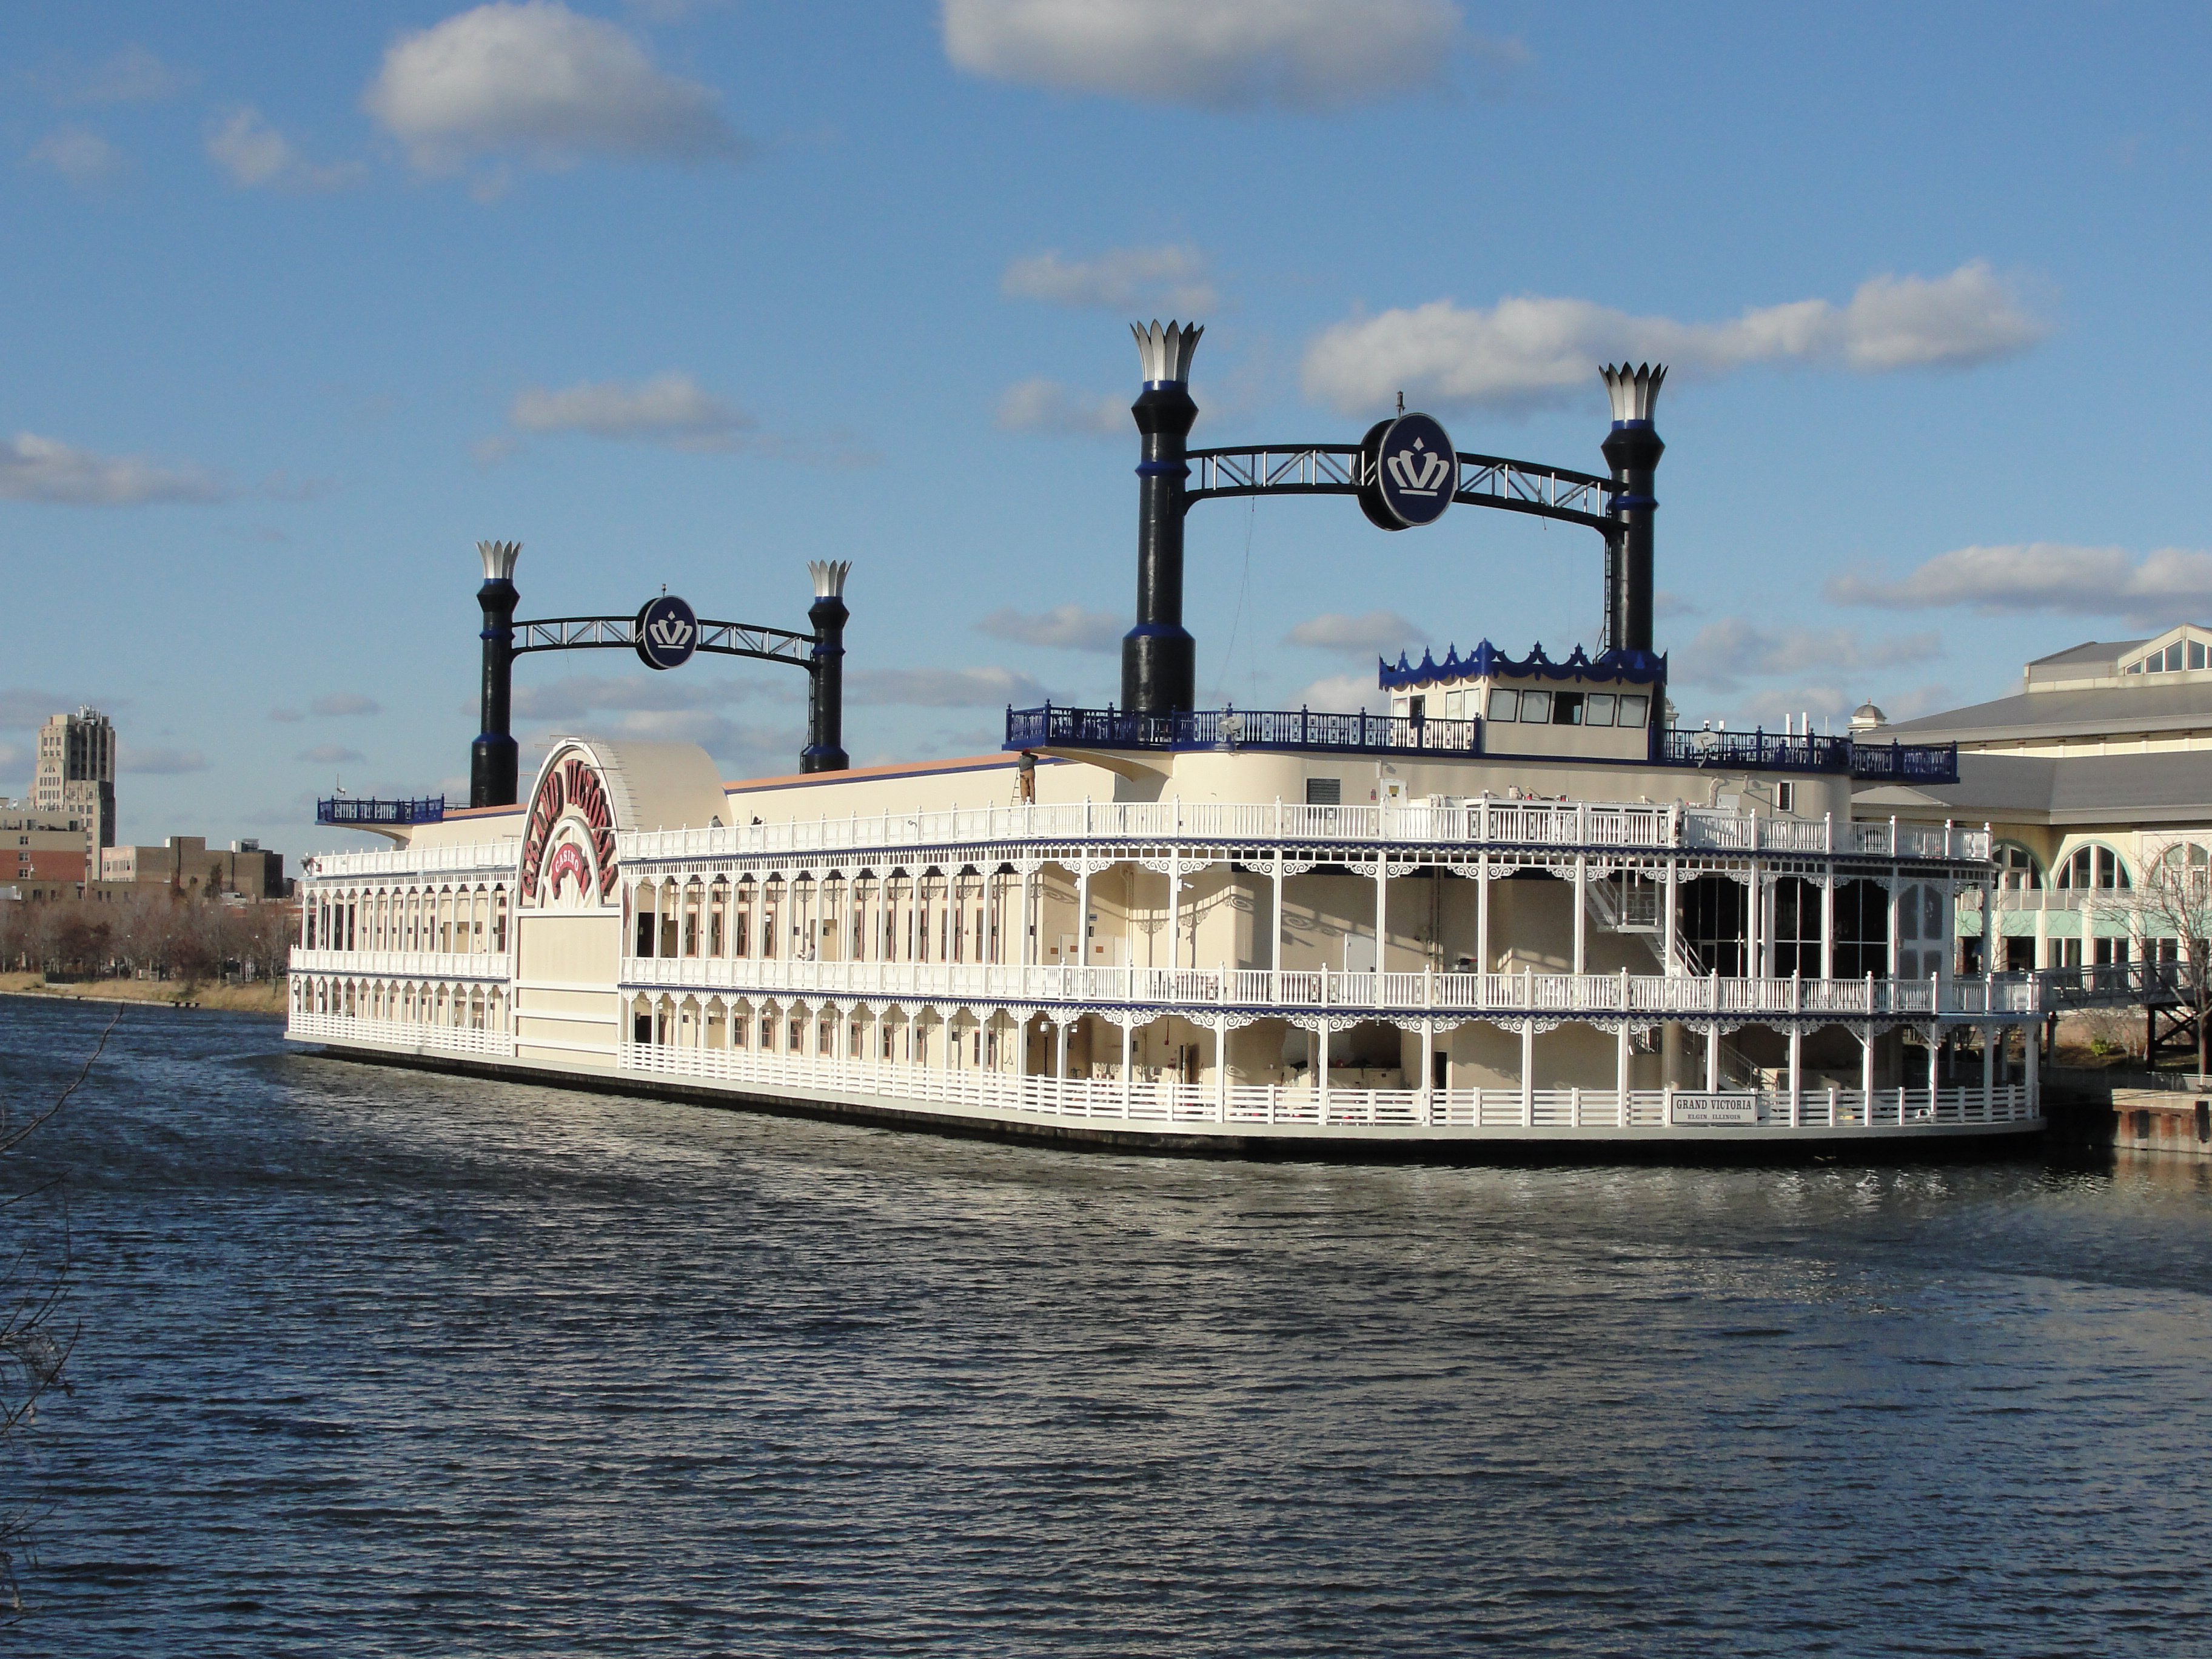 argosy riverboat casino cincinnati ohio